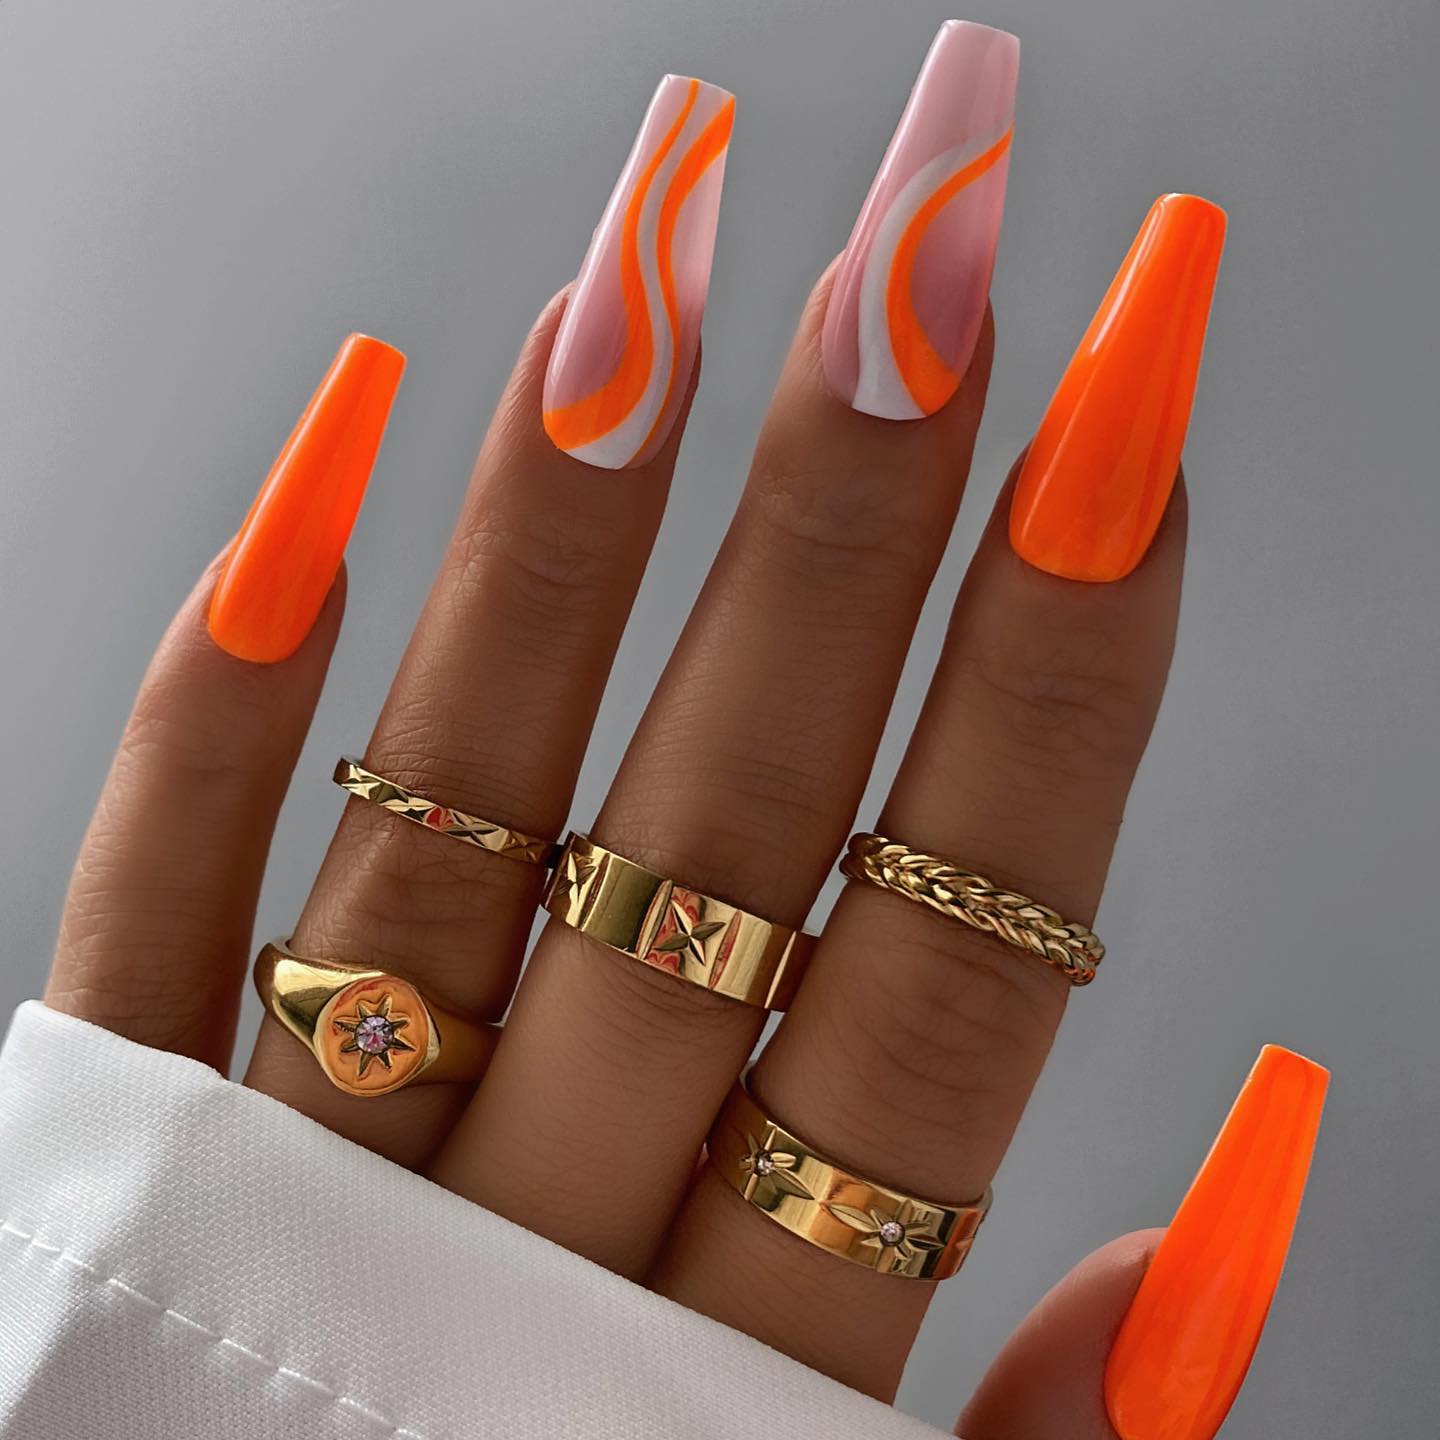 Long Acrylic Orange Nails